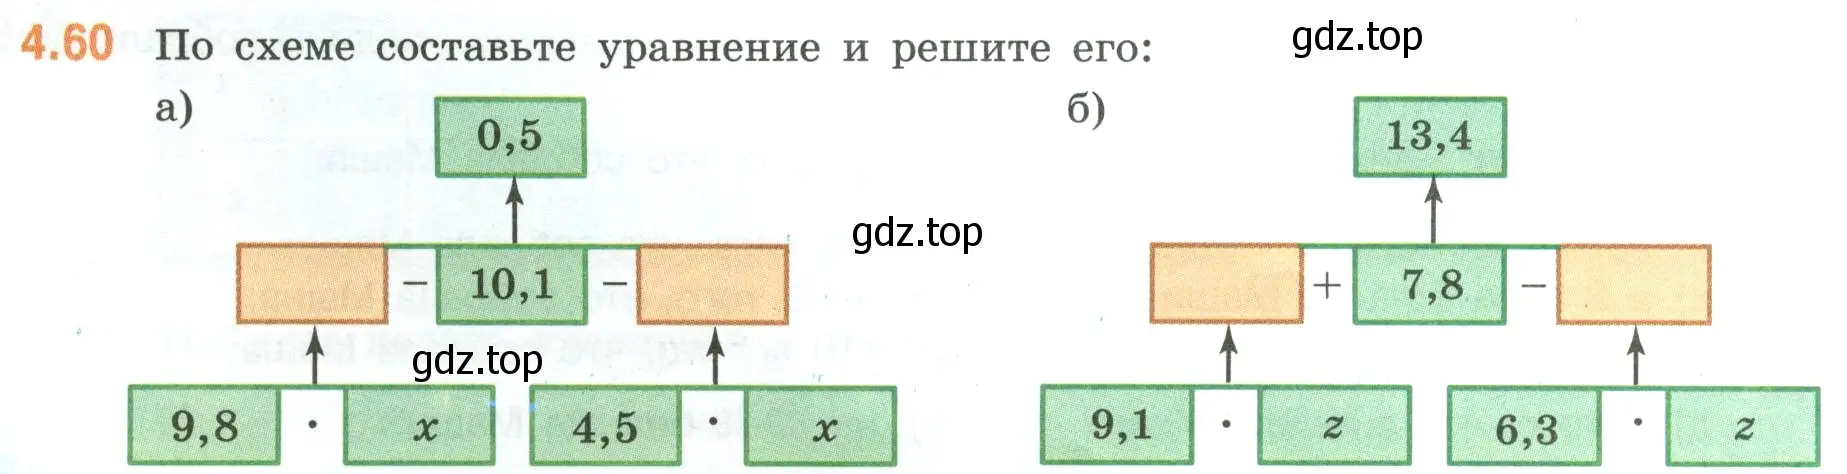 Условие номер 4.60 (страница 18) гдз по математике 6 класс Виленкин, Жохов, учебник 2 часть